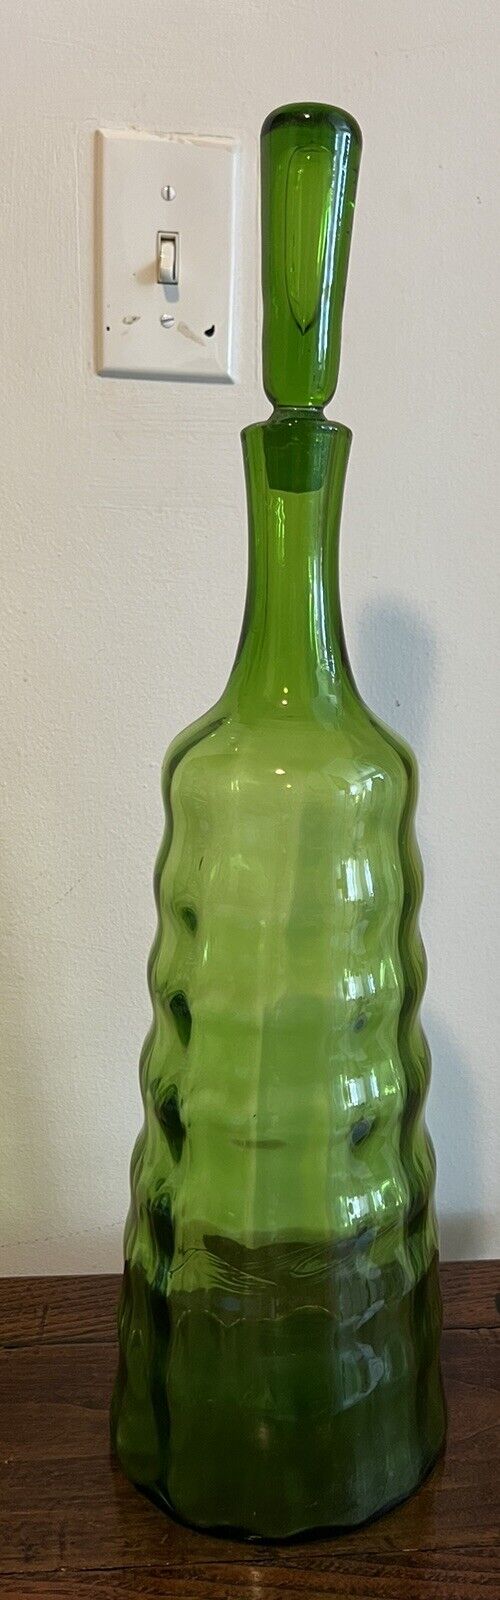 Blenko Joel Myers Mid Century Modern Green Glass Decanter